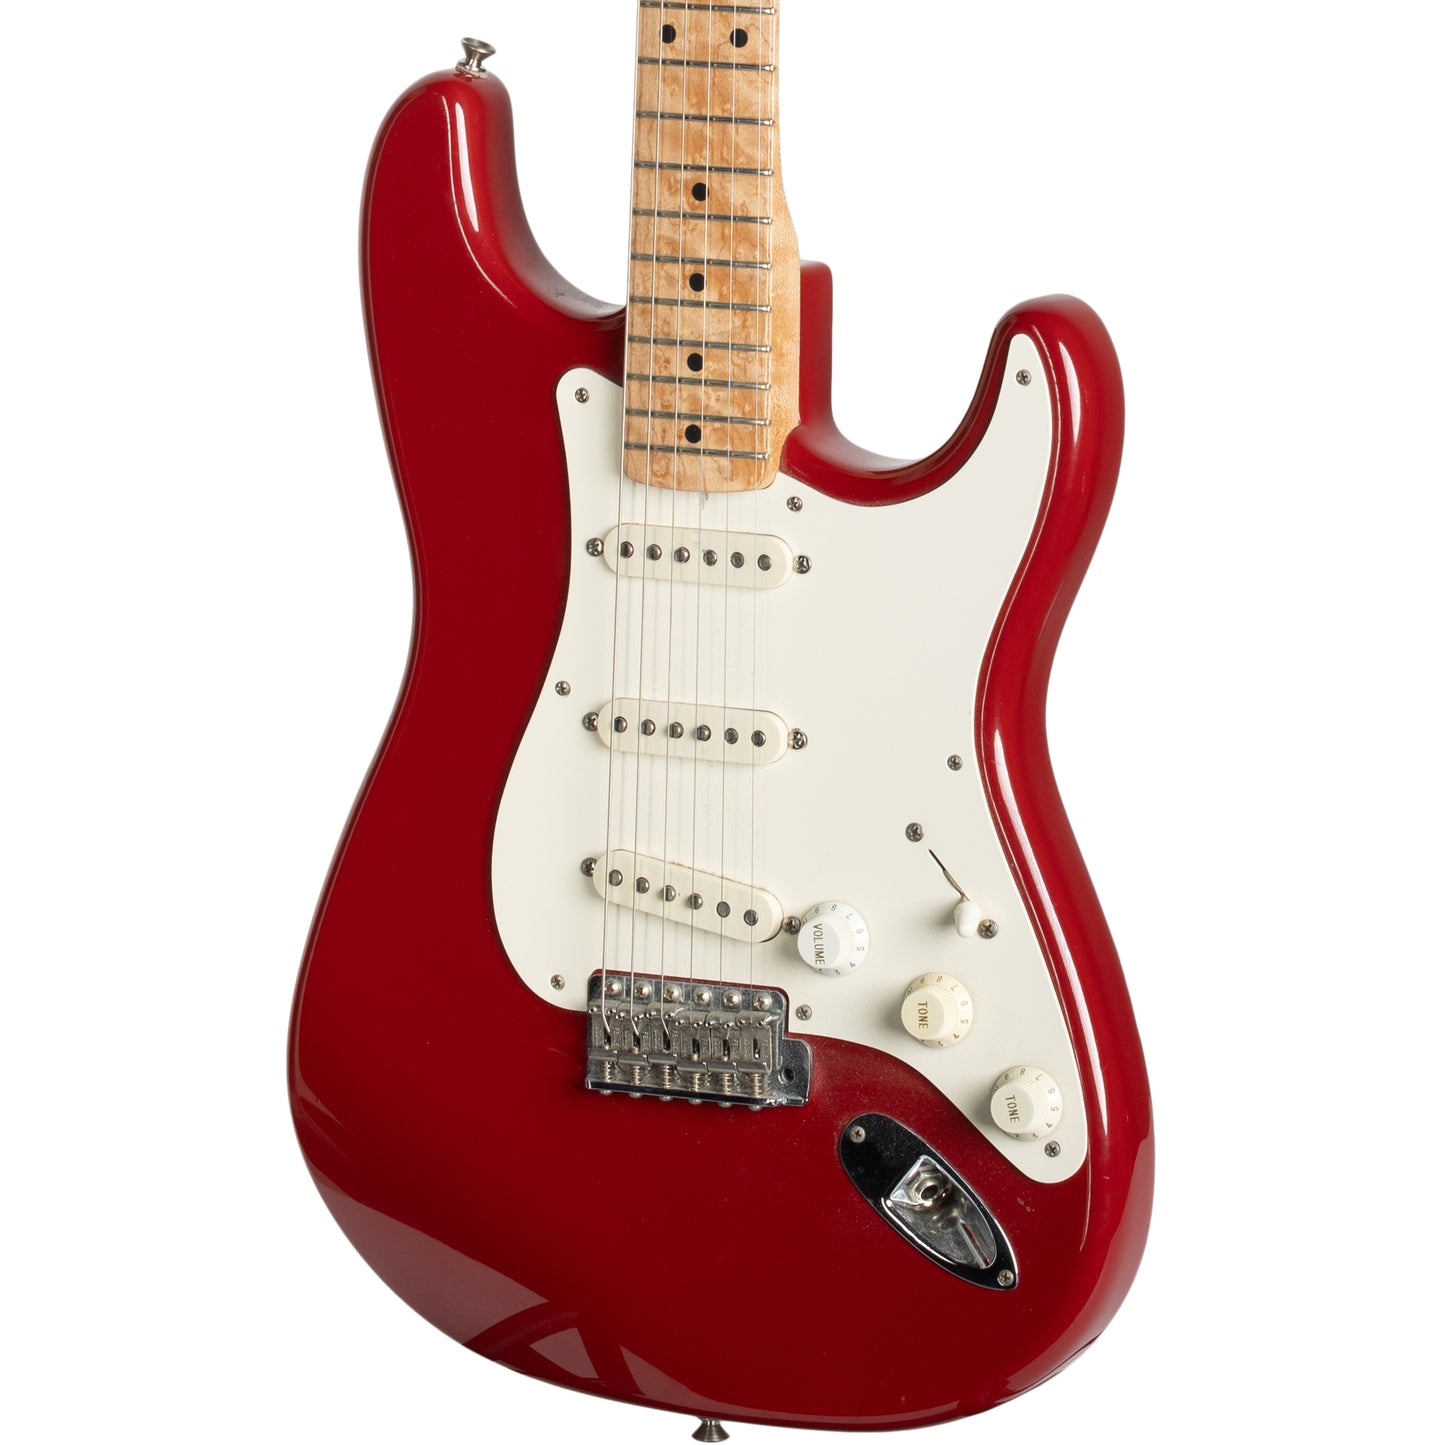 Fender Custom Shop 1958 Stratocaster - Dakota Red